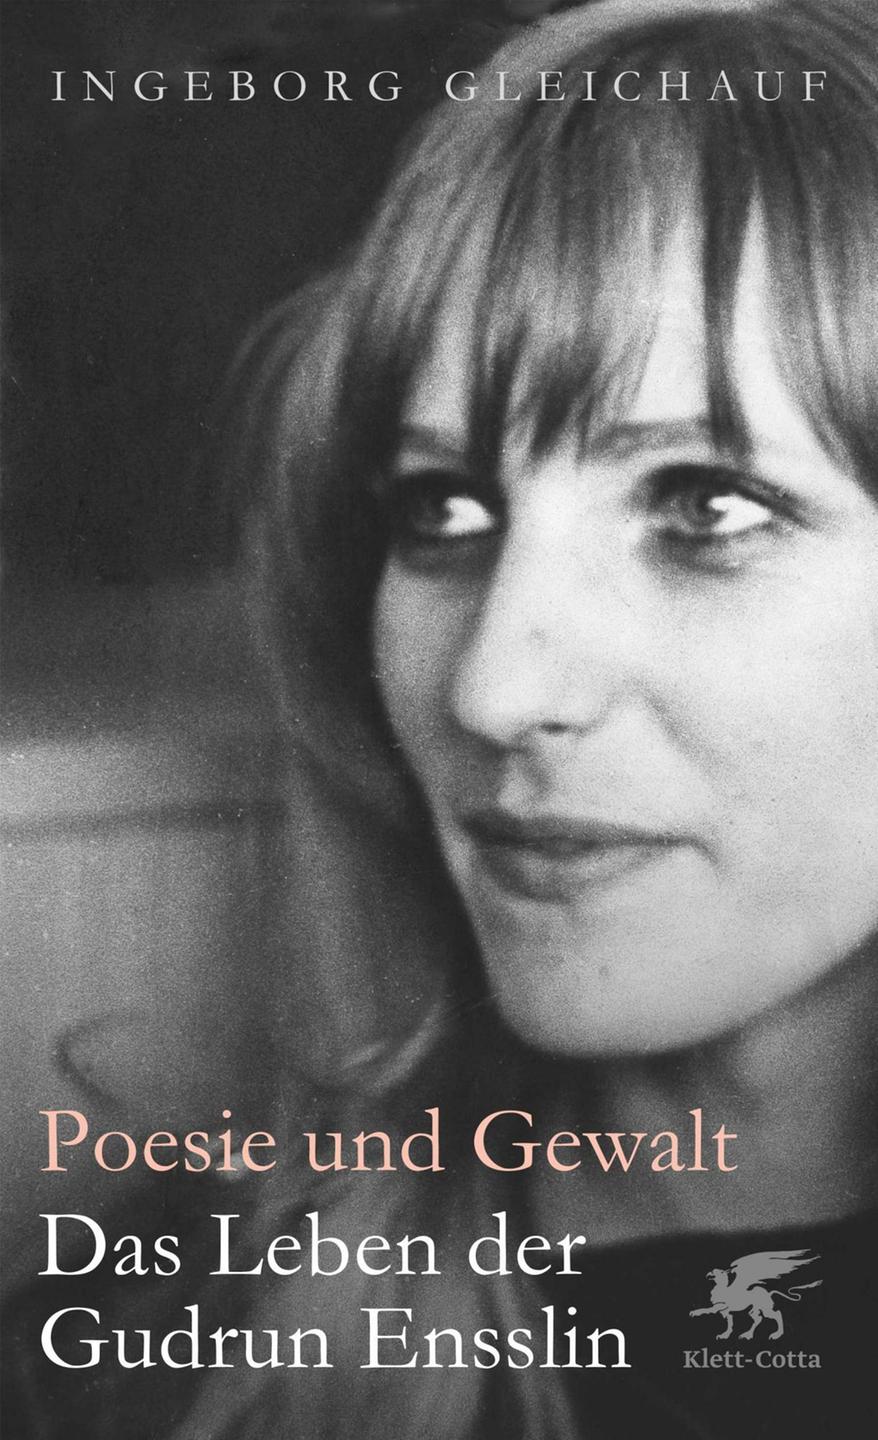 Cover - Ingeborg Gleichauf: "Poesie und Gewalt"